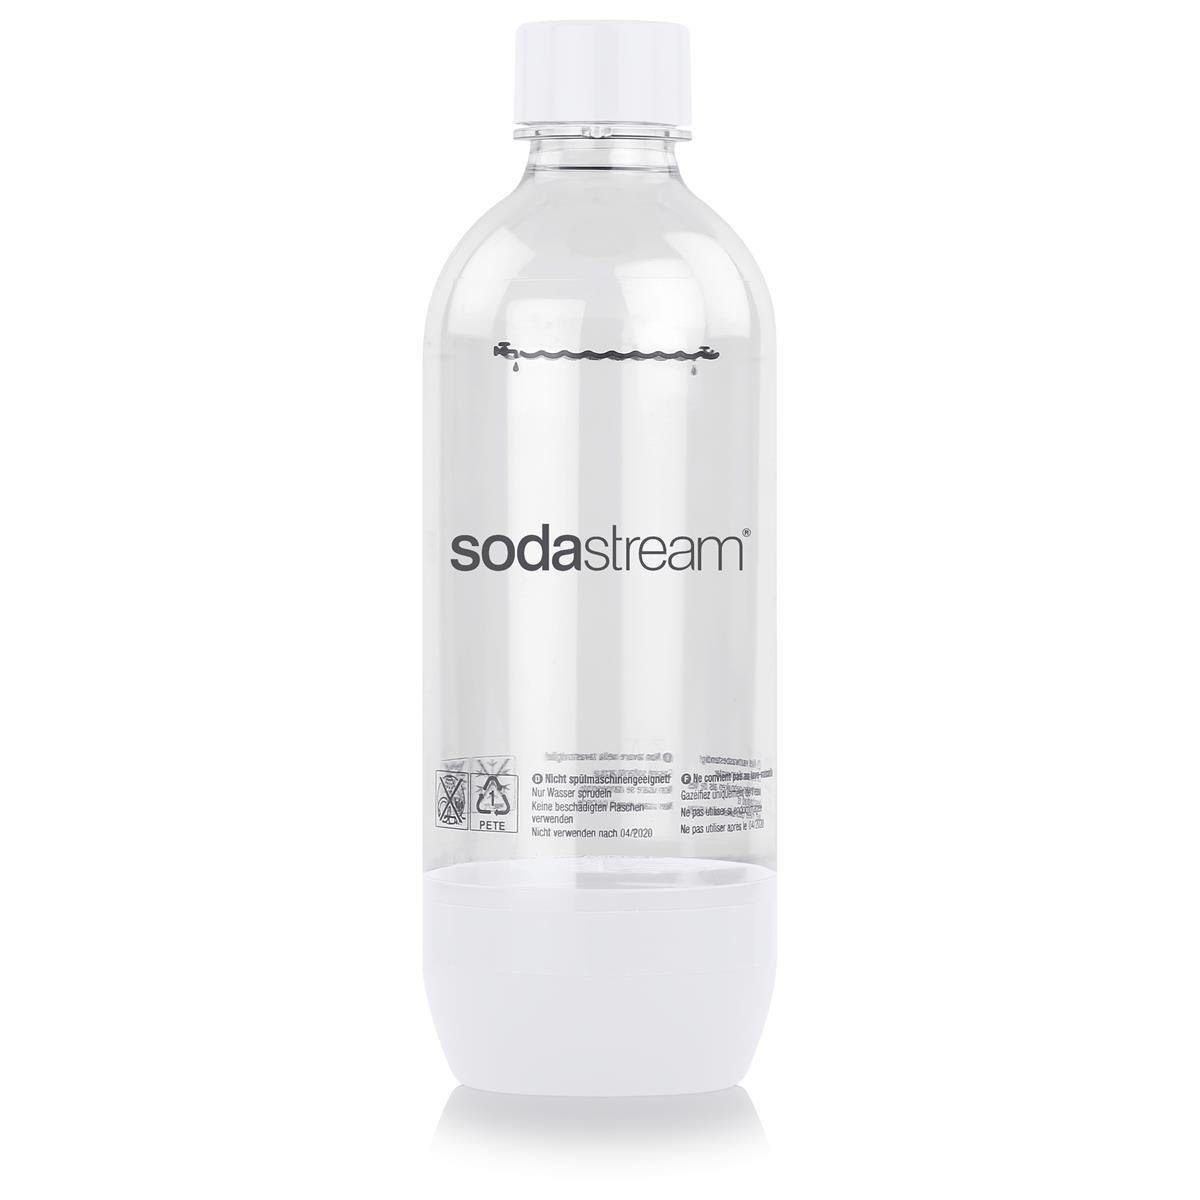 Liter Pac 3x1 Ersatz-Flaschen 2+1 PET orange/grün/weiß SodaStream Trinkflasche SodaStream (2er